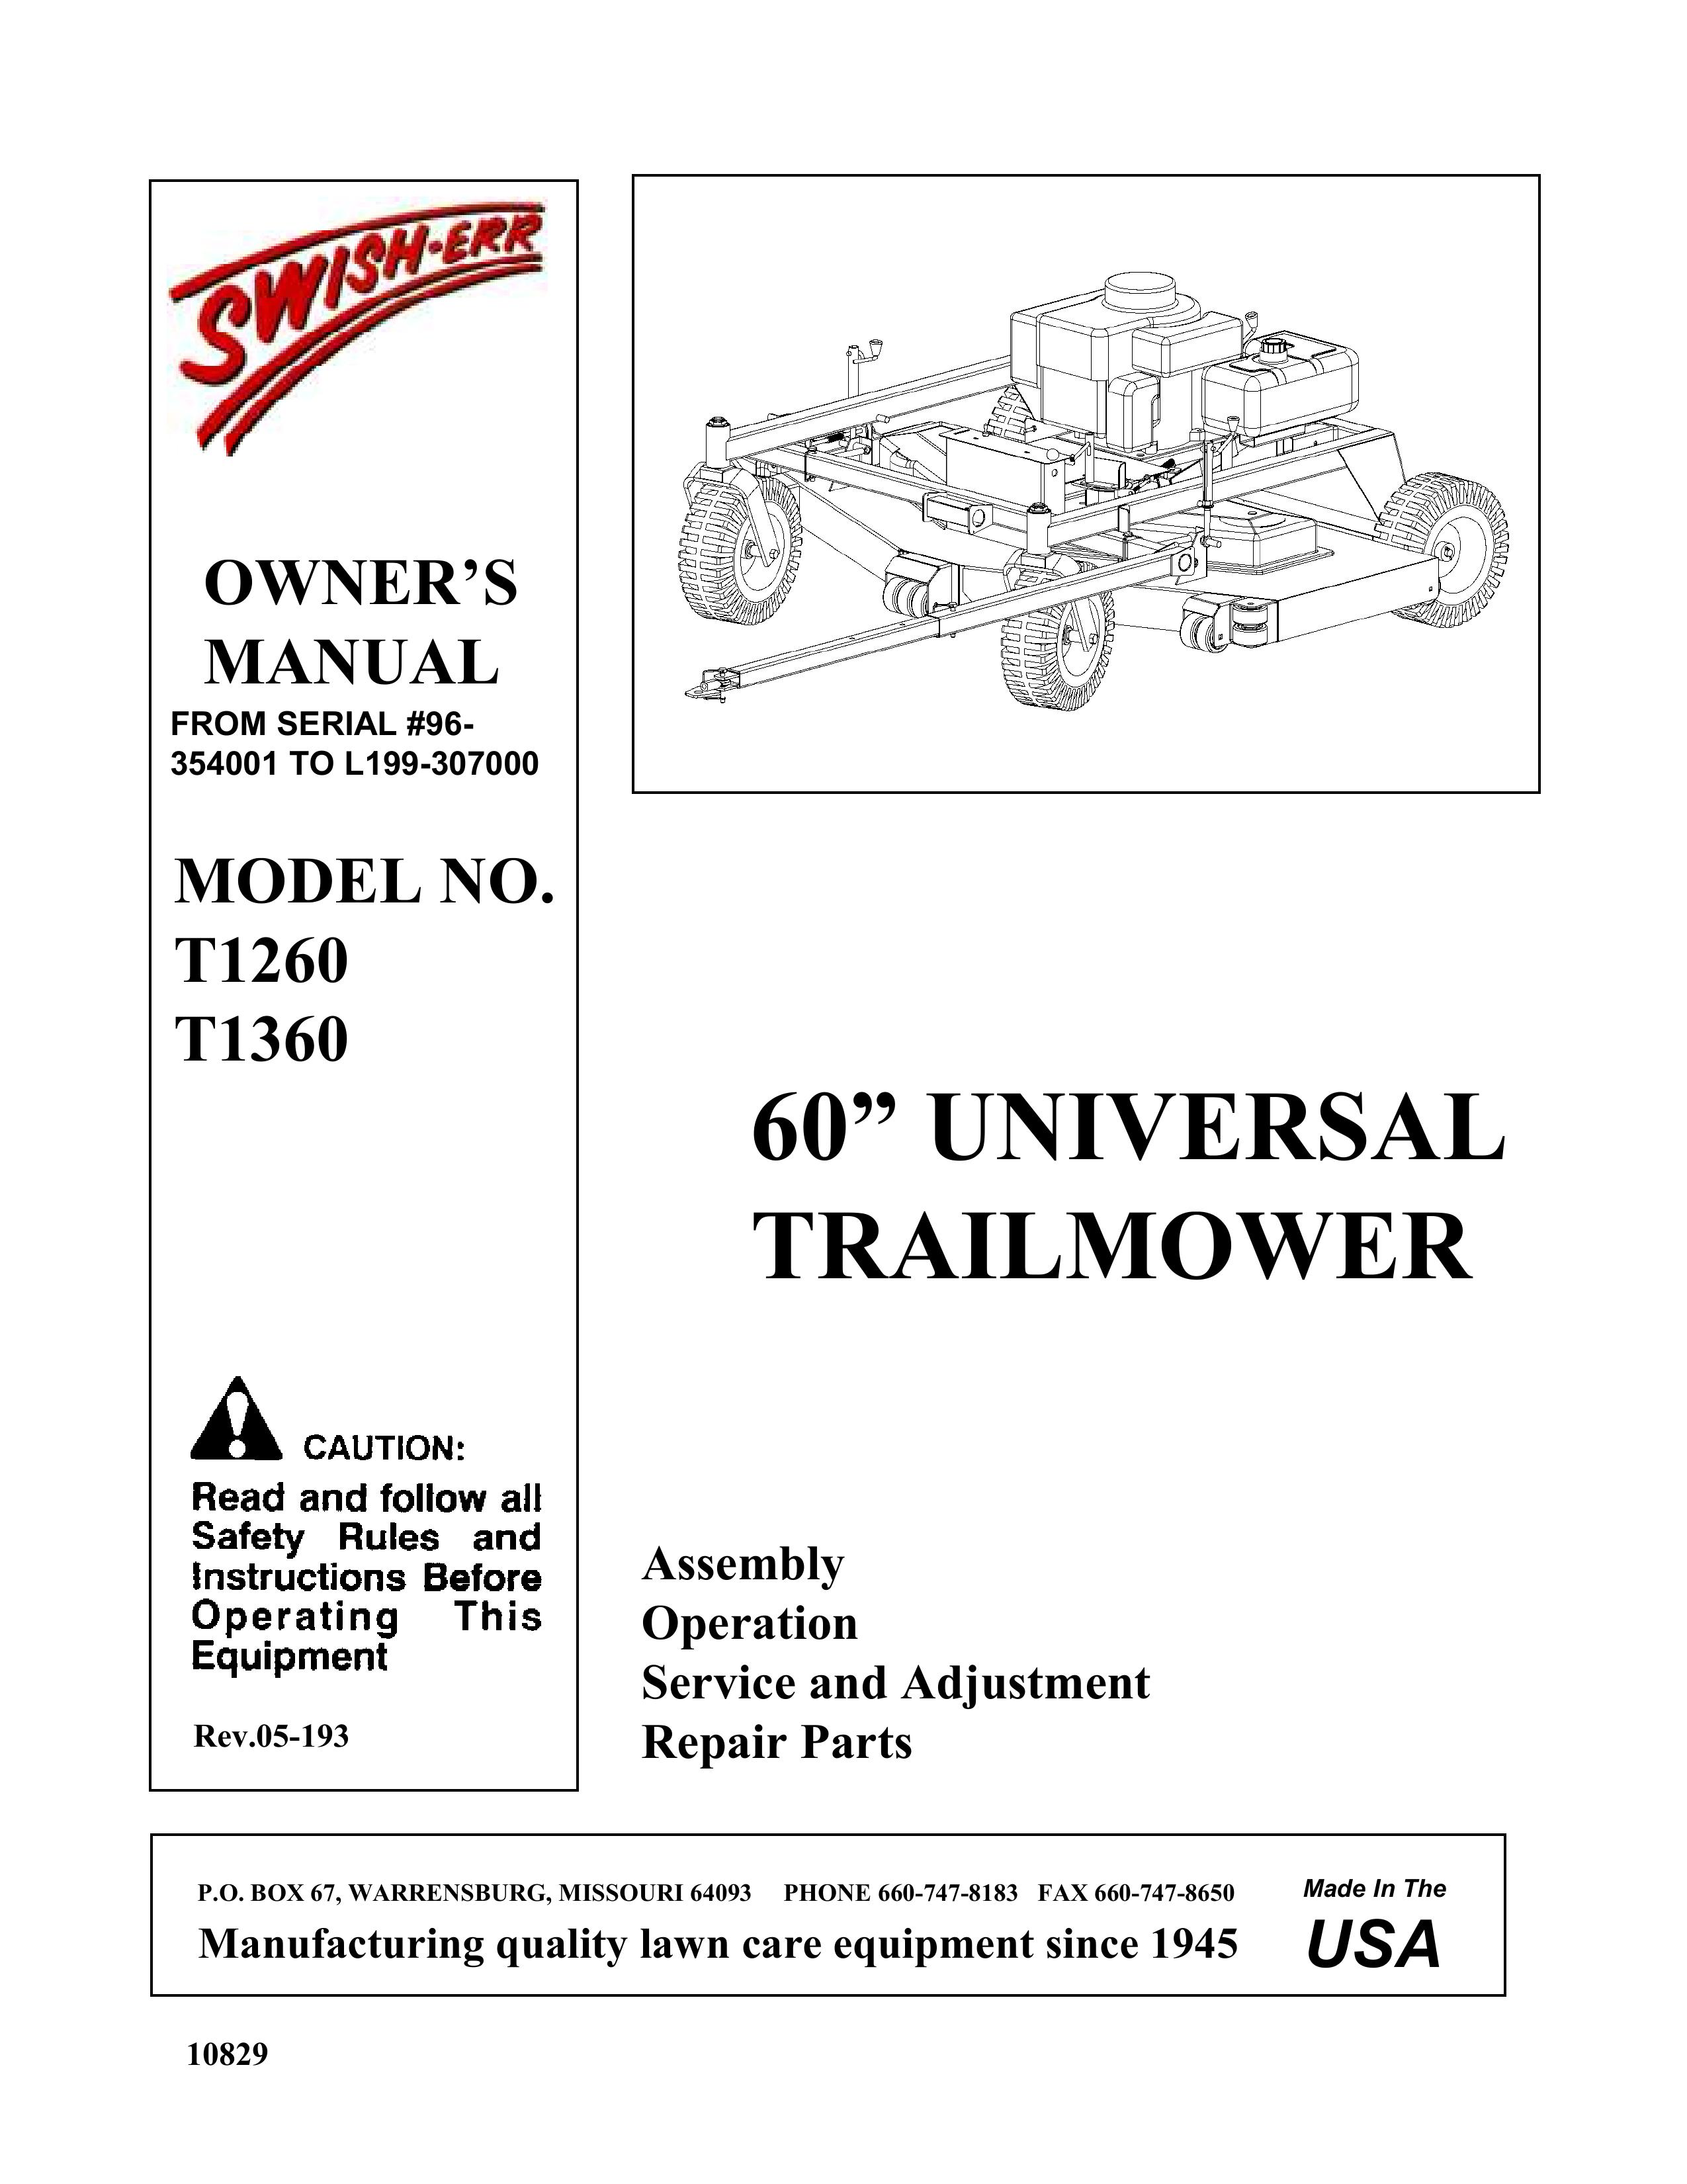 Swisher T1260, T1360 Lawn Mower User Manual